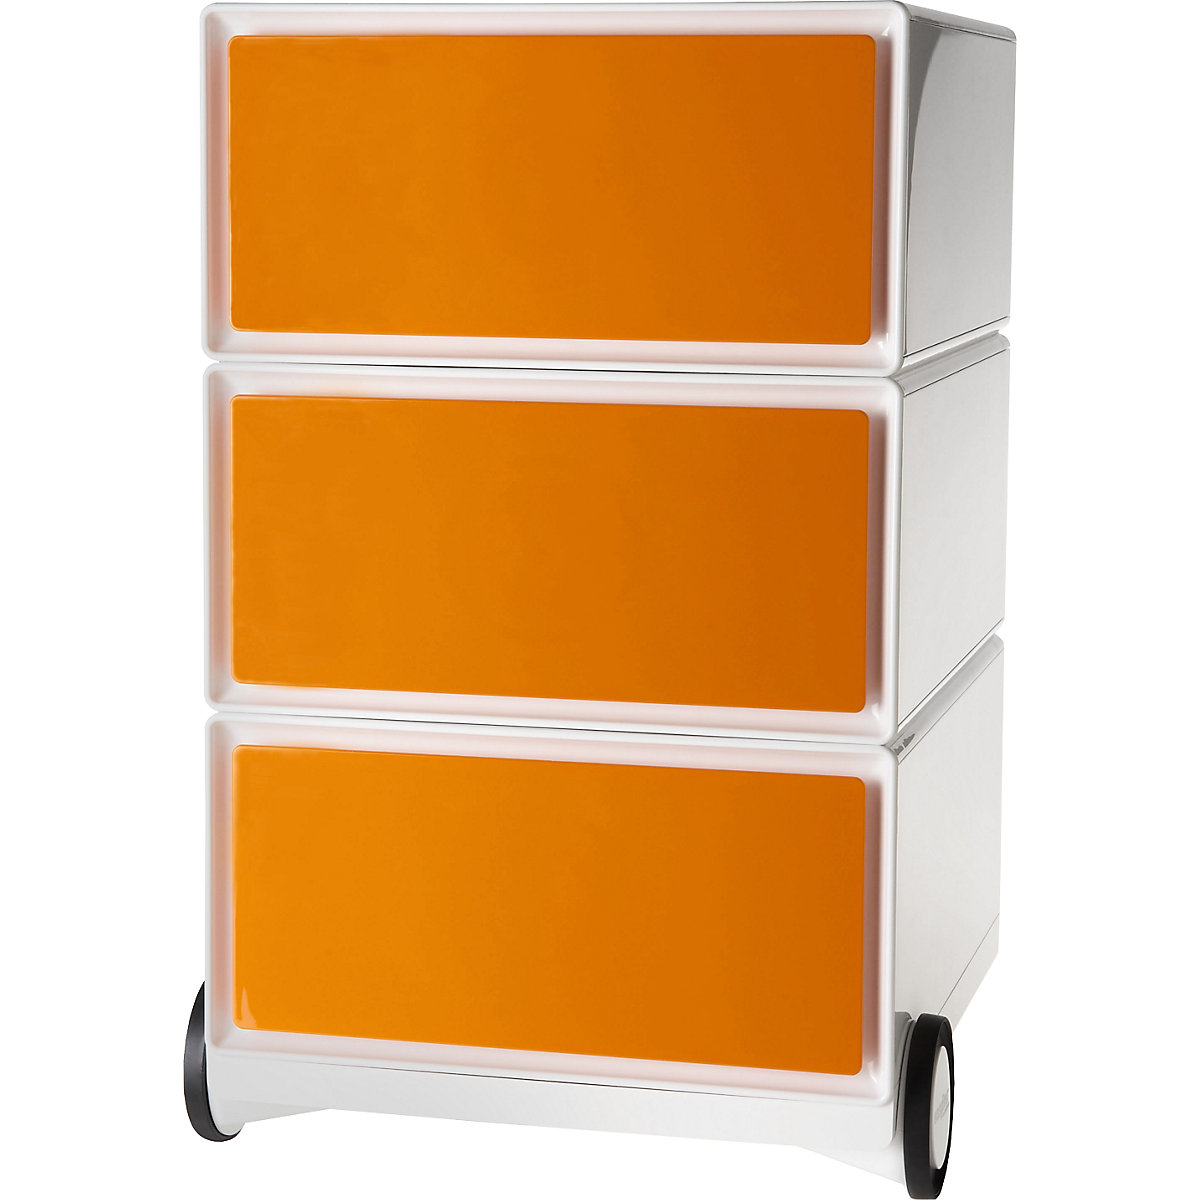 Pokretni ladičar easyBox® – Paperflow, 3 ladice, u bijeloj / narančastoj boji